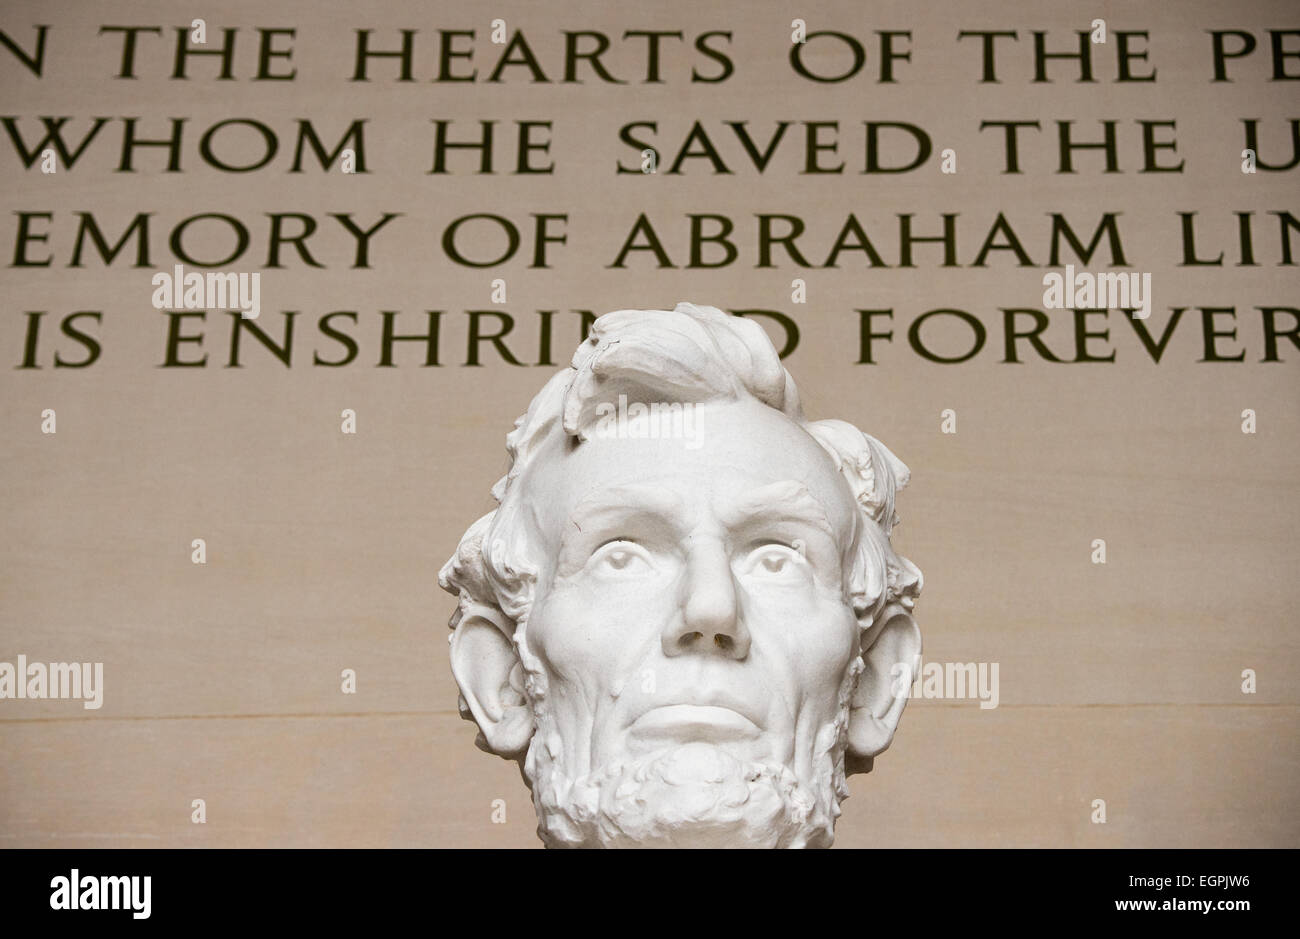 WASHINGTON DC, Stati Uniti d'America - Close-up dettaglio della statua del presidente Abraham Lincoln che si siede nel Lincoln Memorial a Washington DC. Foto Stock